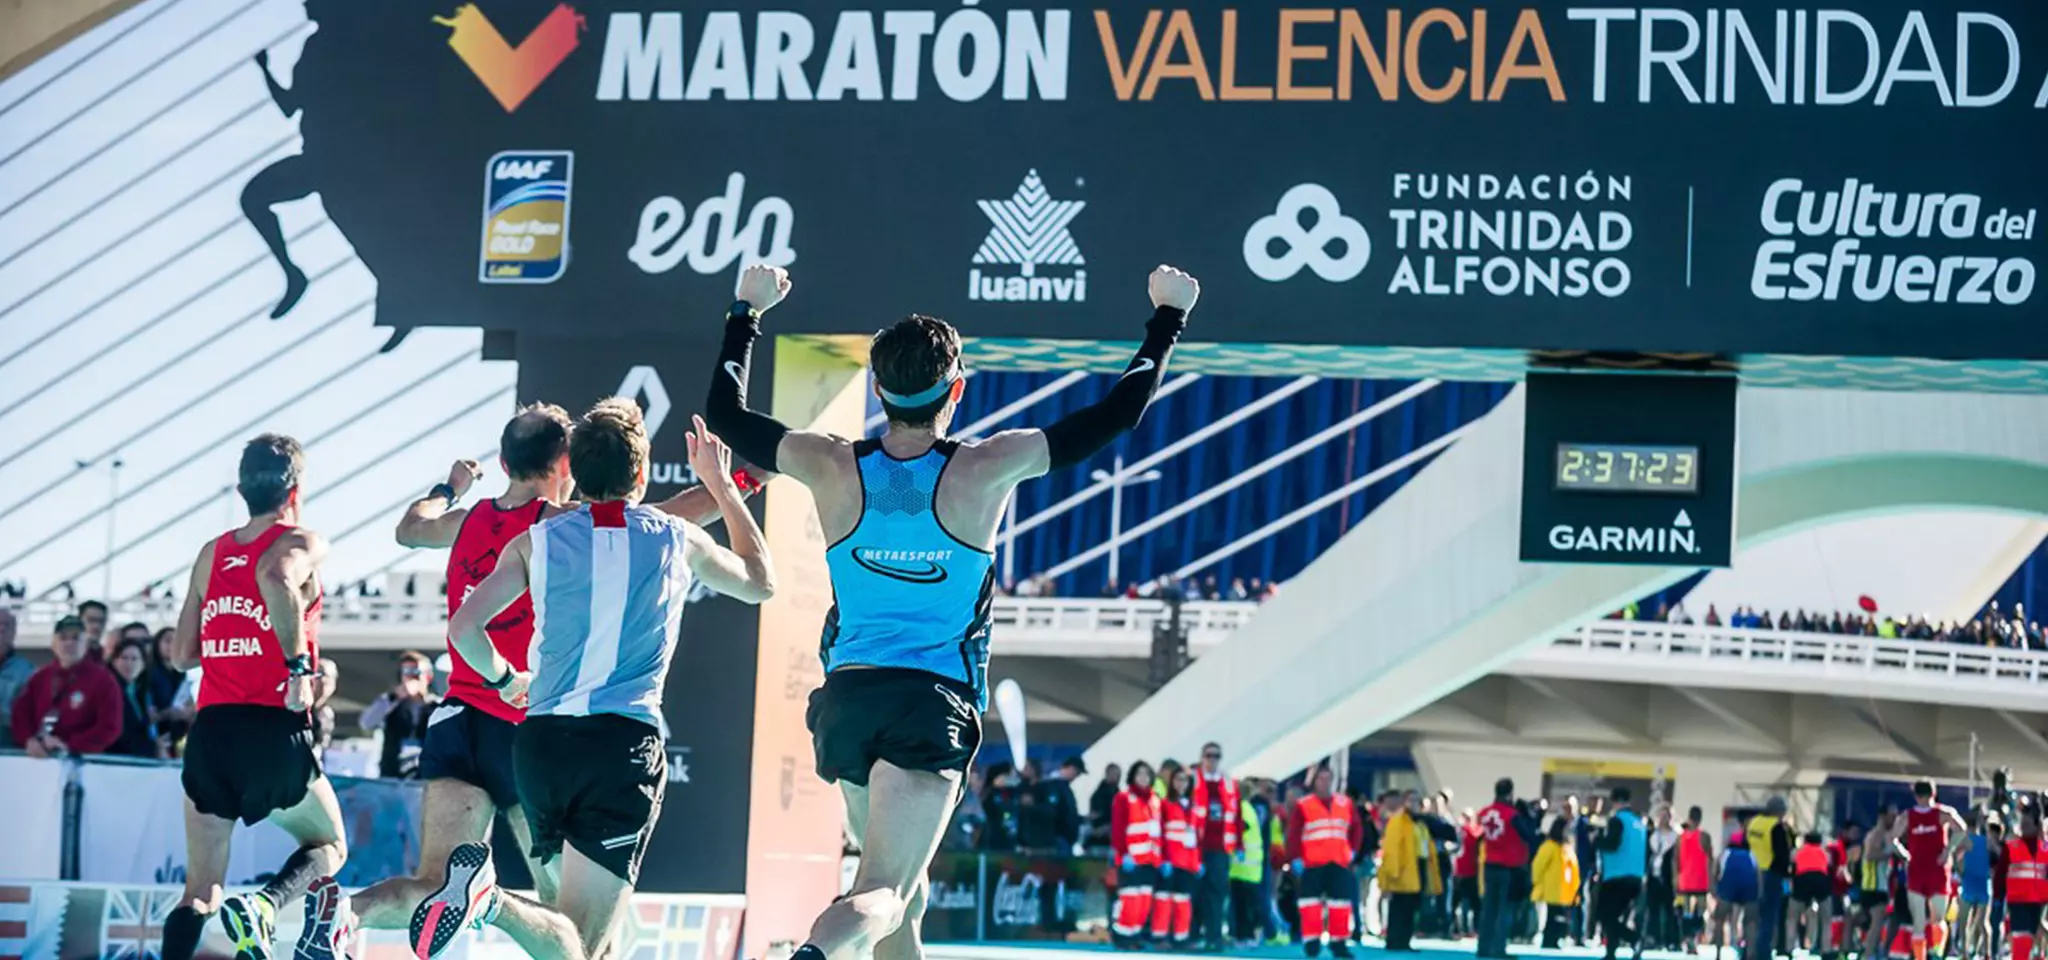 Prenota la maratona di Valencia